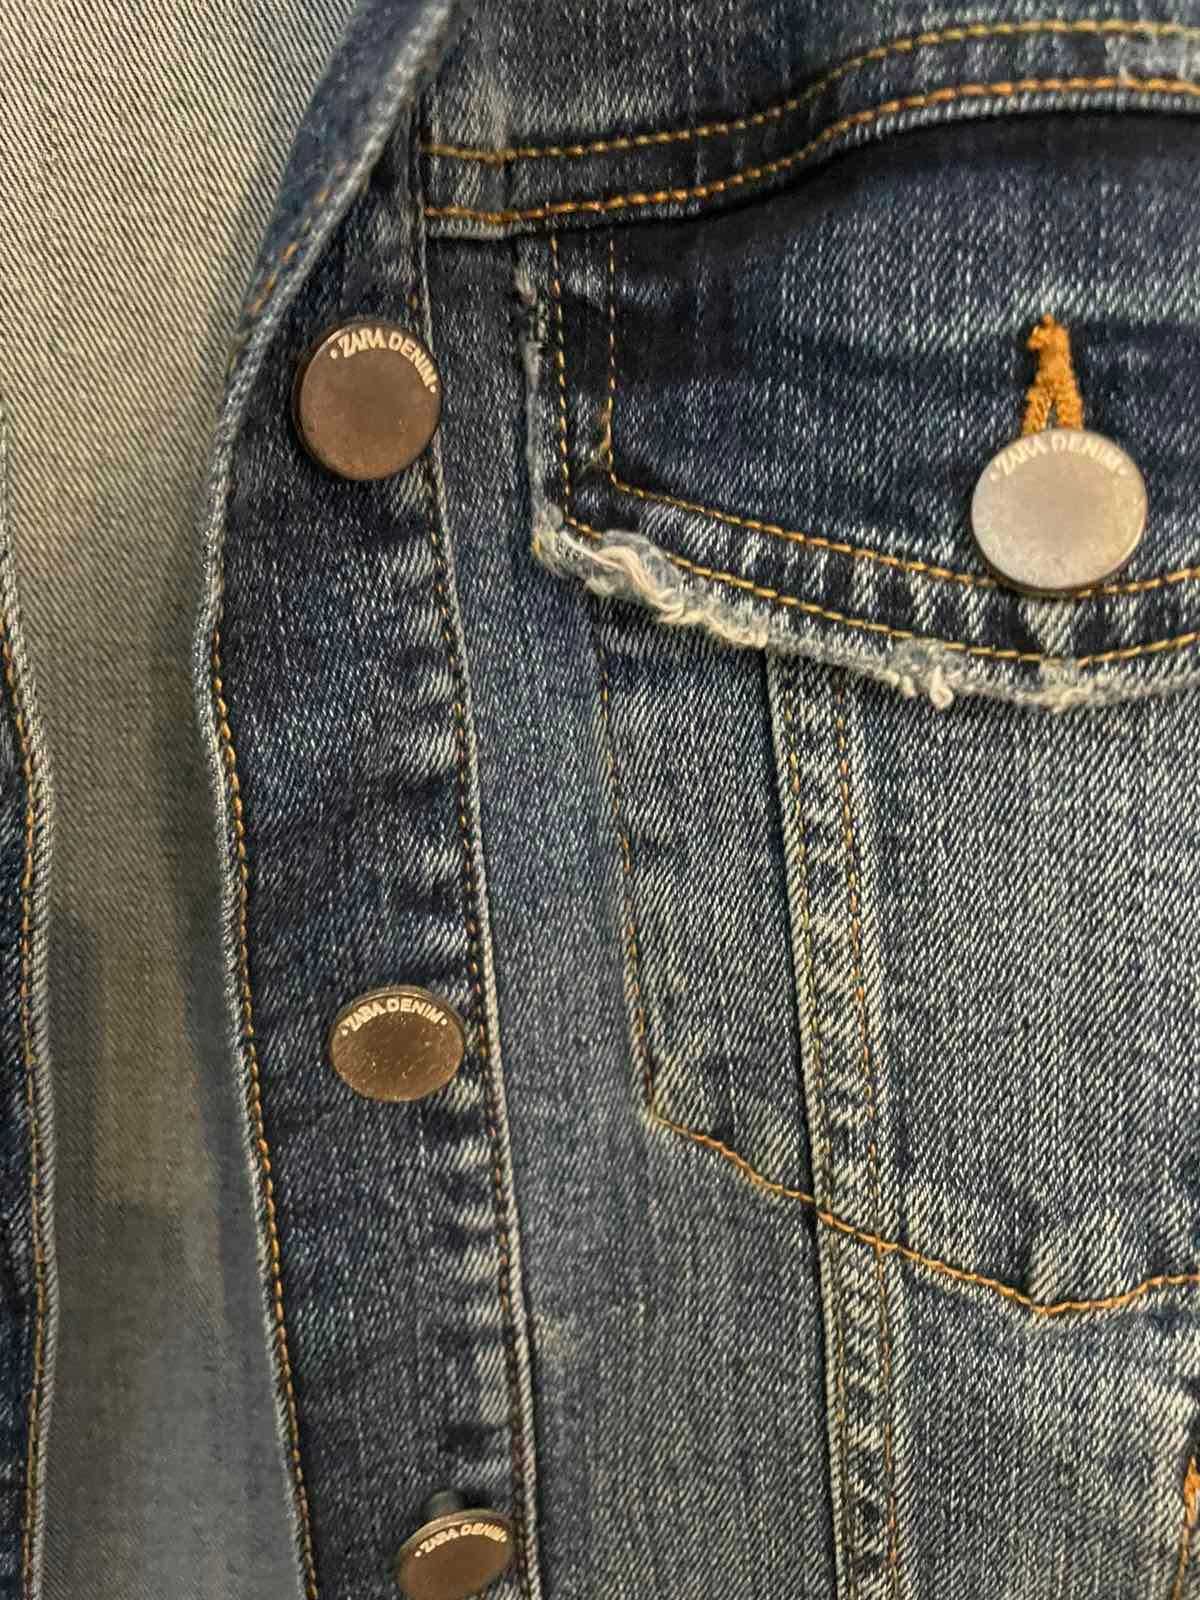 Дамски дънкови якета Zara - 2 броя